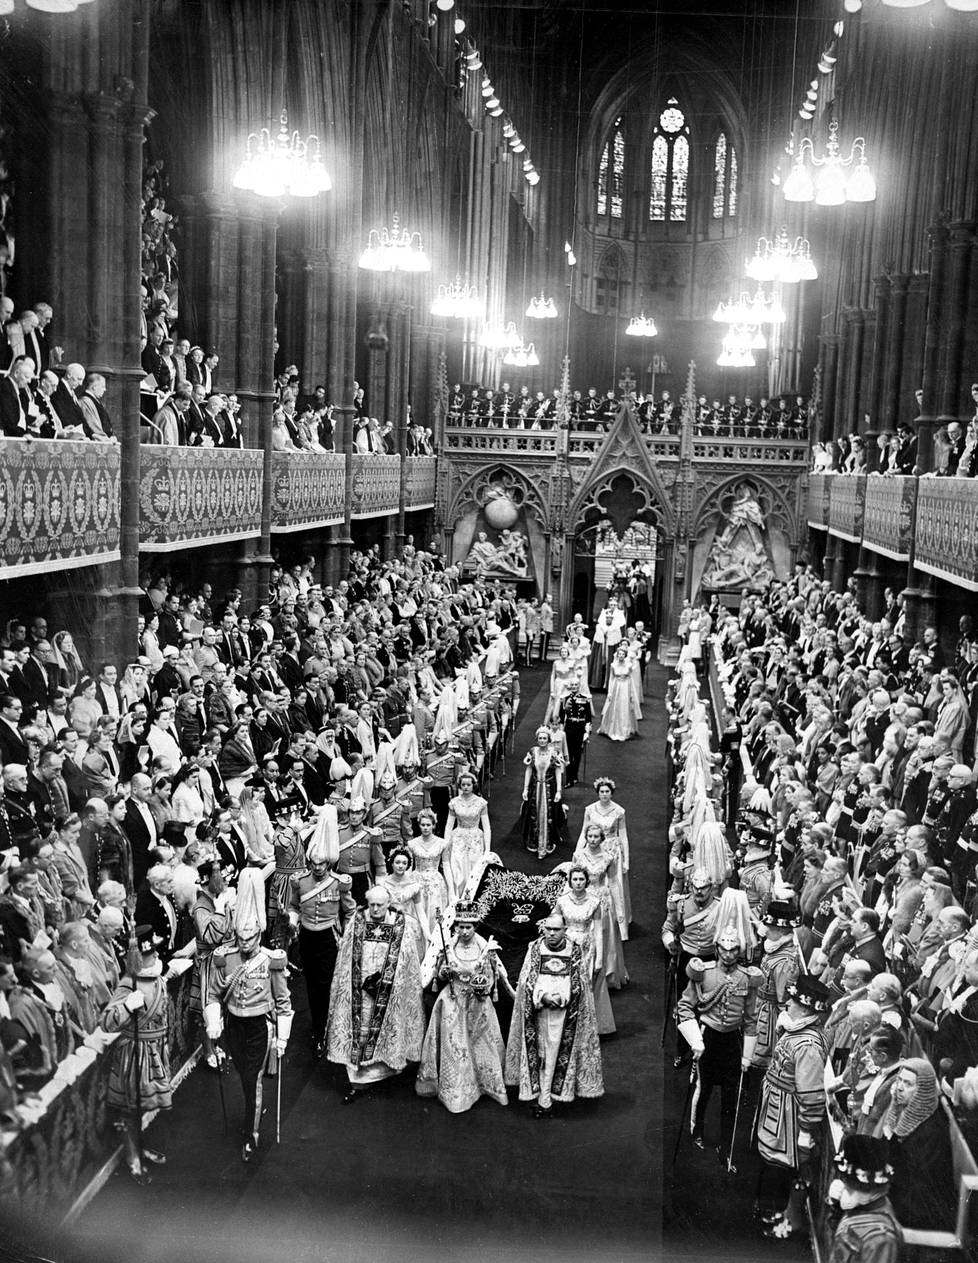 Yli 8000 vierasta kokoontui Westminster Abbey -kirkkoon todistamaan Elisabetin kruunajaisia.